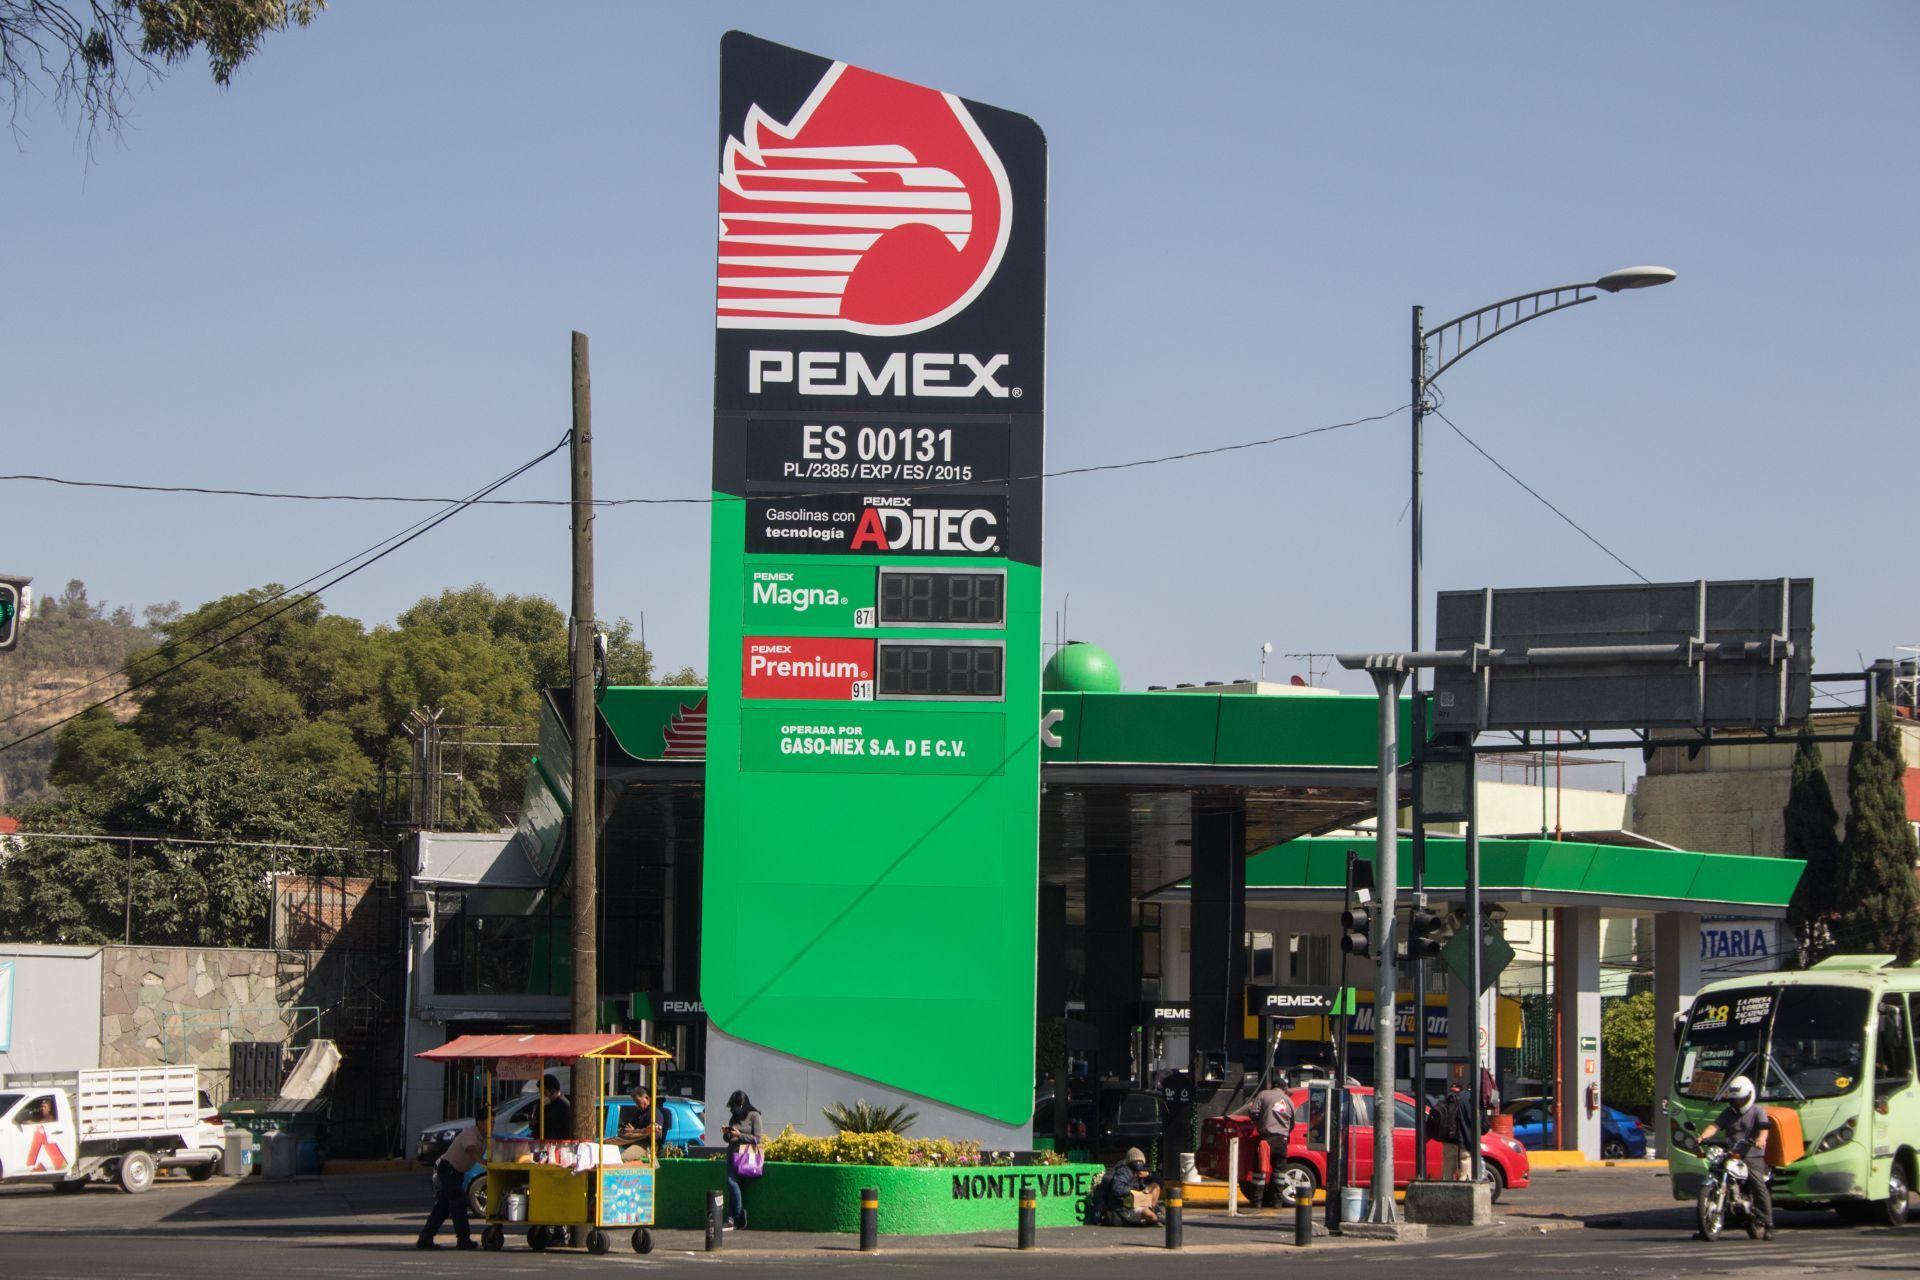 Ventas de Pemex suben 91% en segundo trimestre de 2021 gracias a aumento en demanda de combustibles